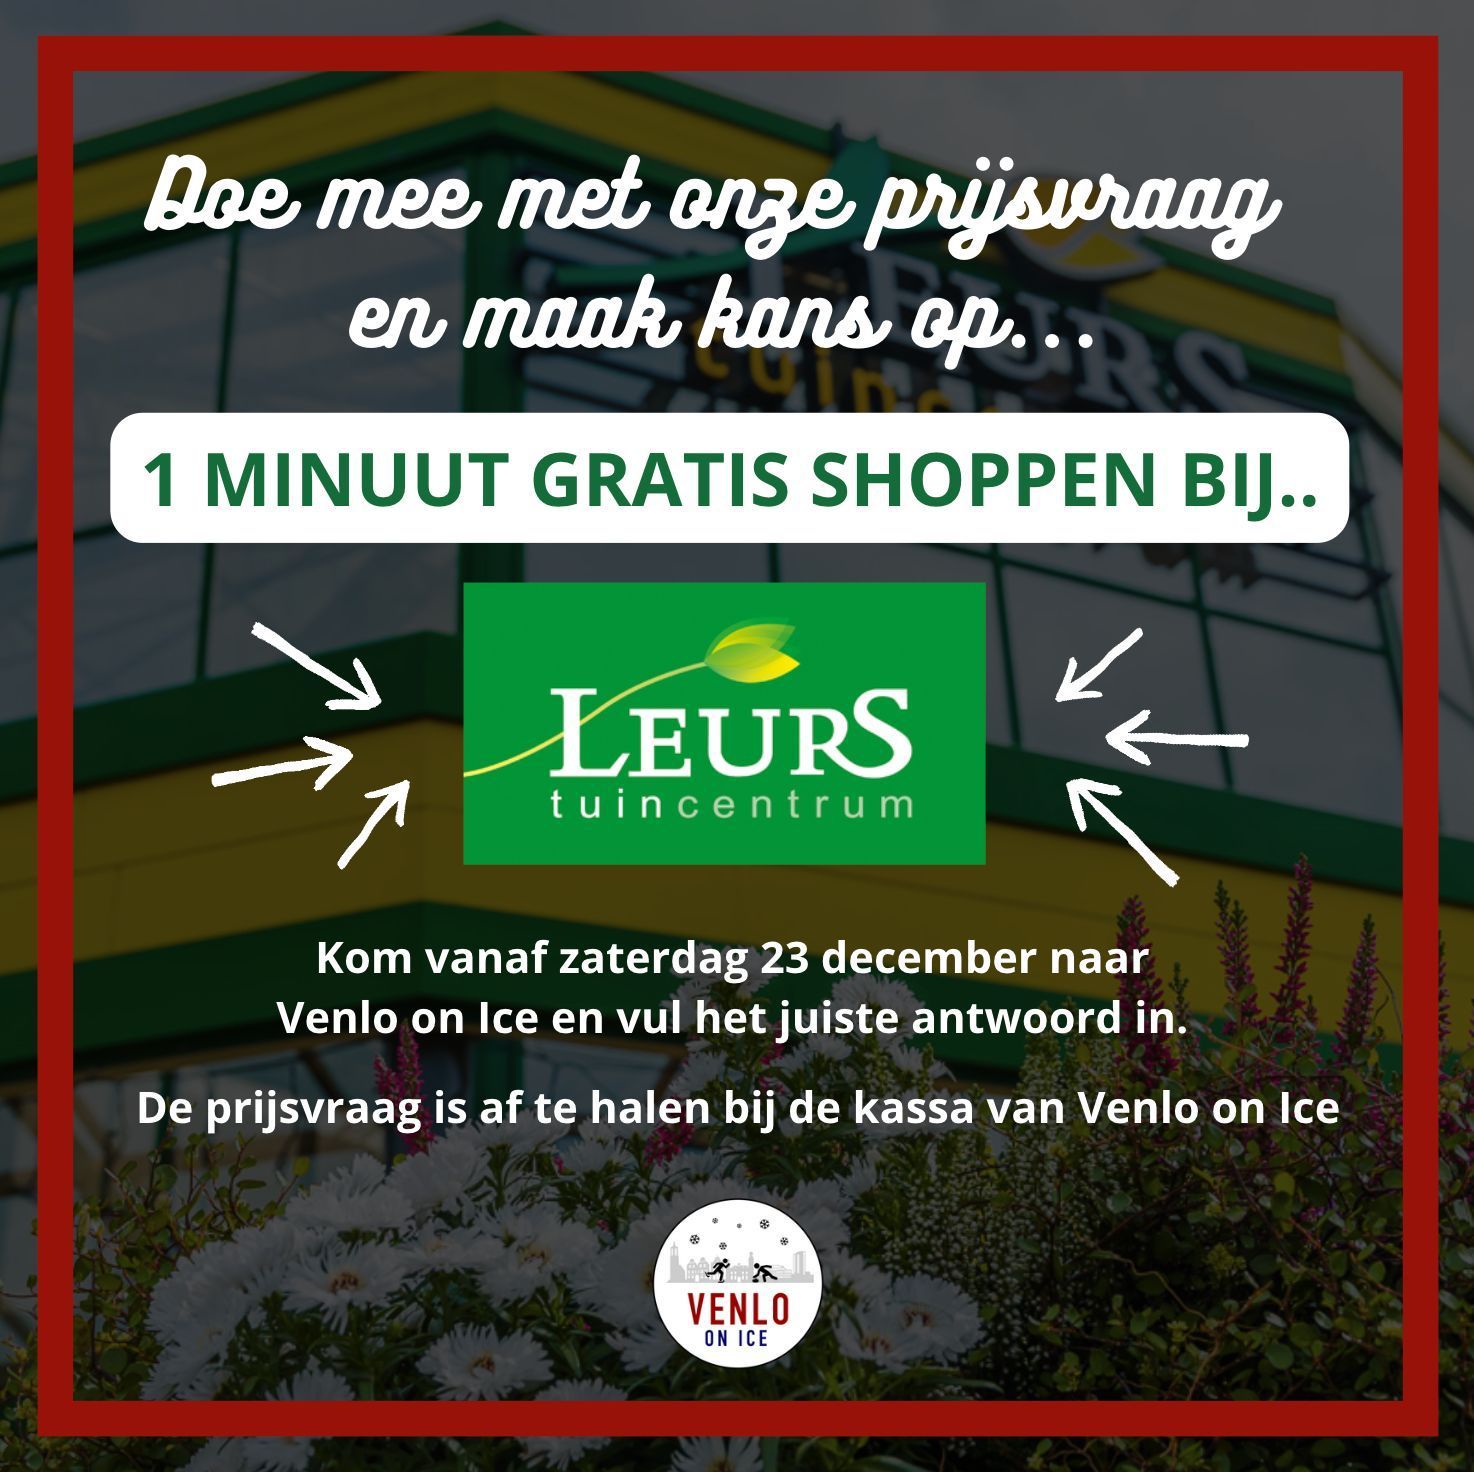 Win 1 minuut gratis shoppen bij Leurs!